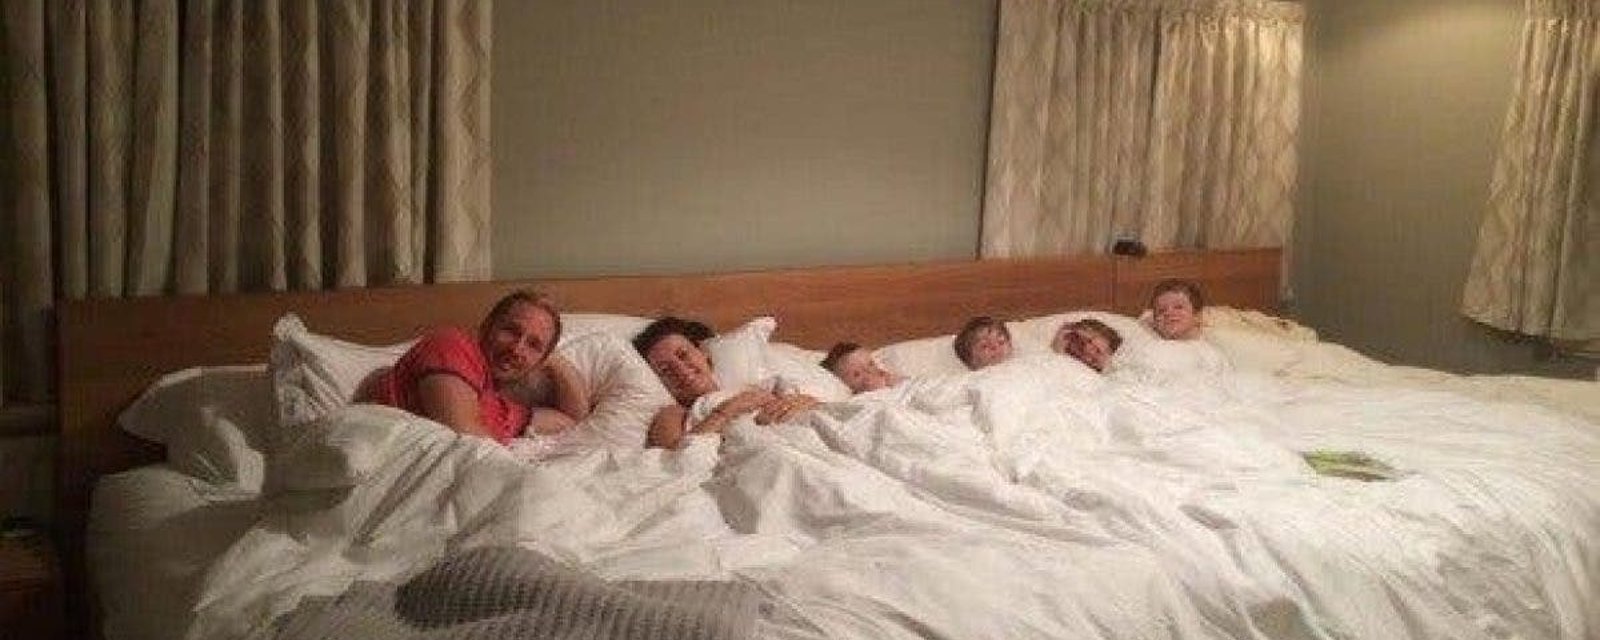 Ce couple a fabriqué un lit gigantesque pour dormir avec ses 4 enfants